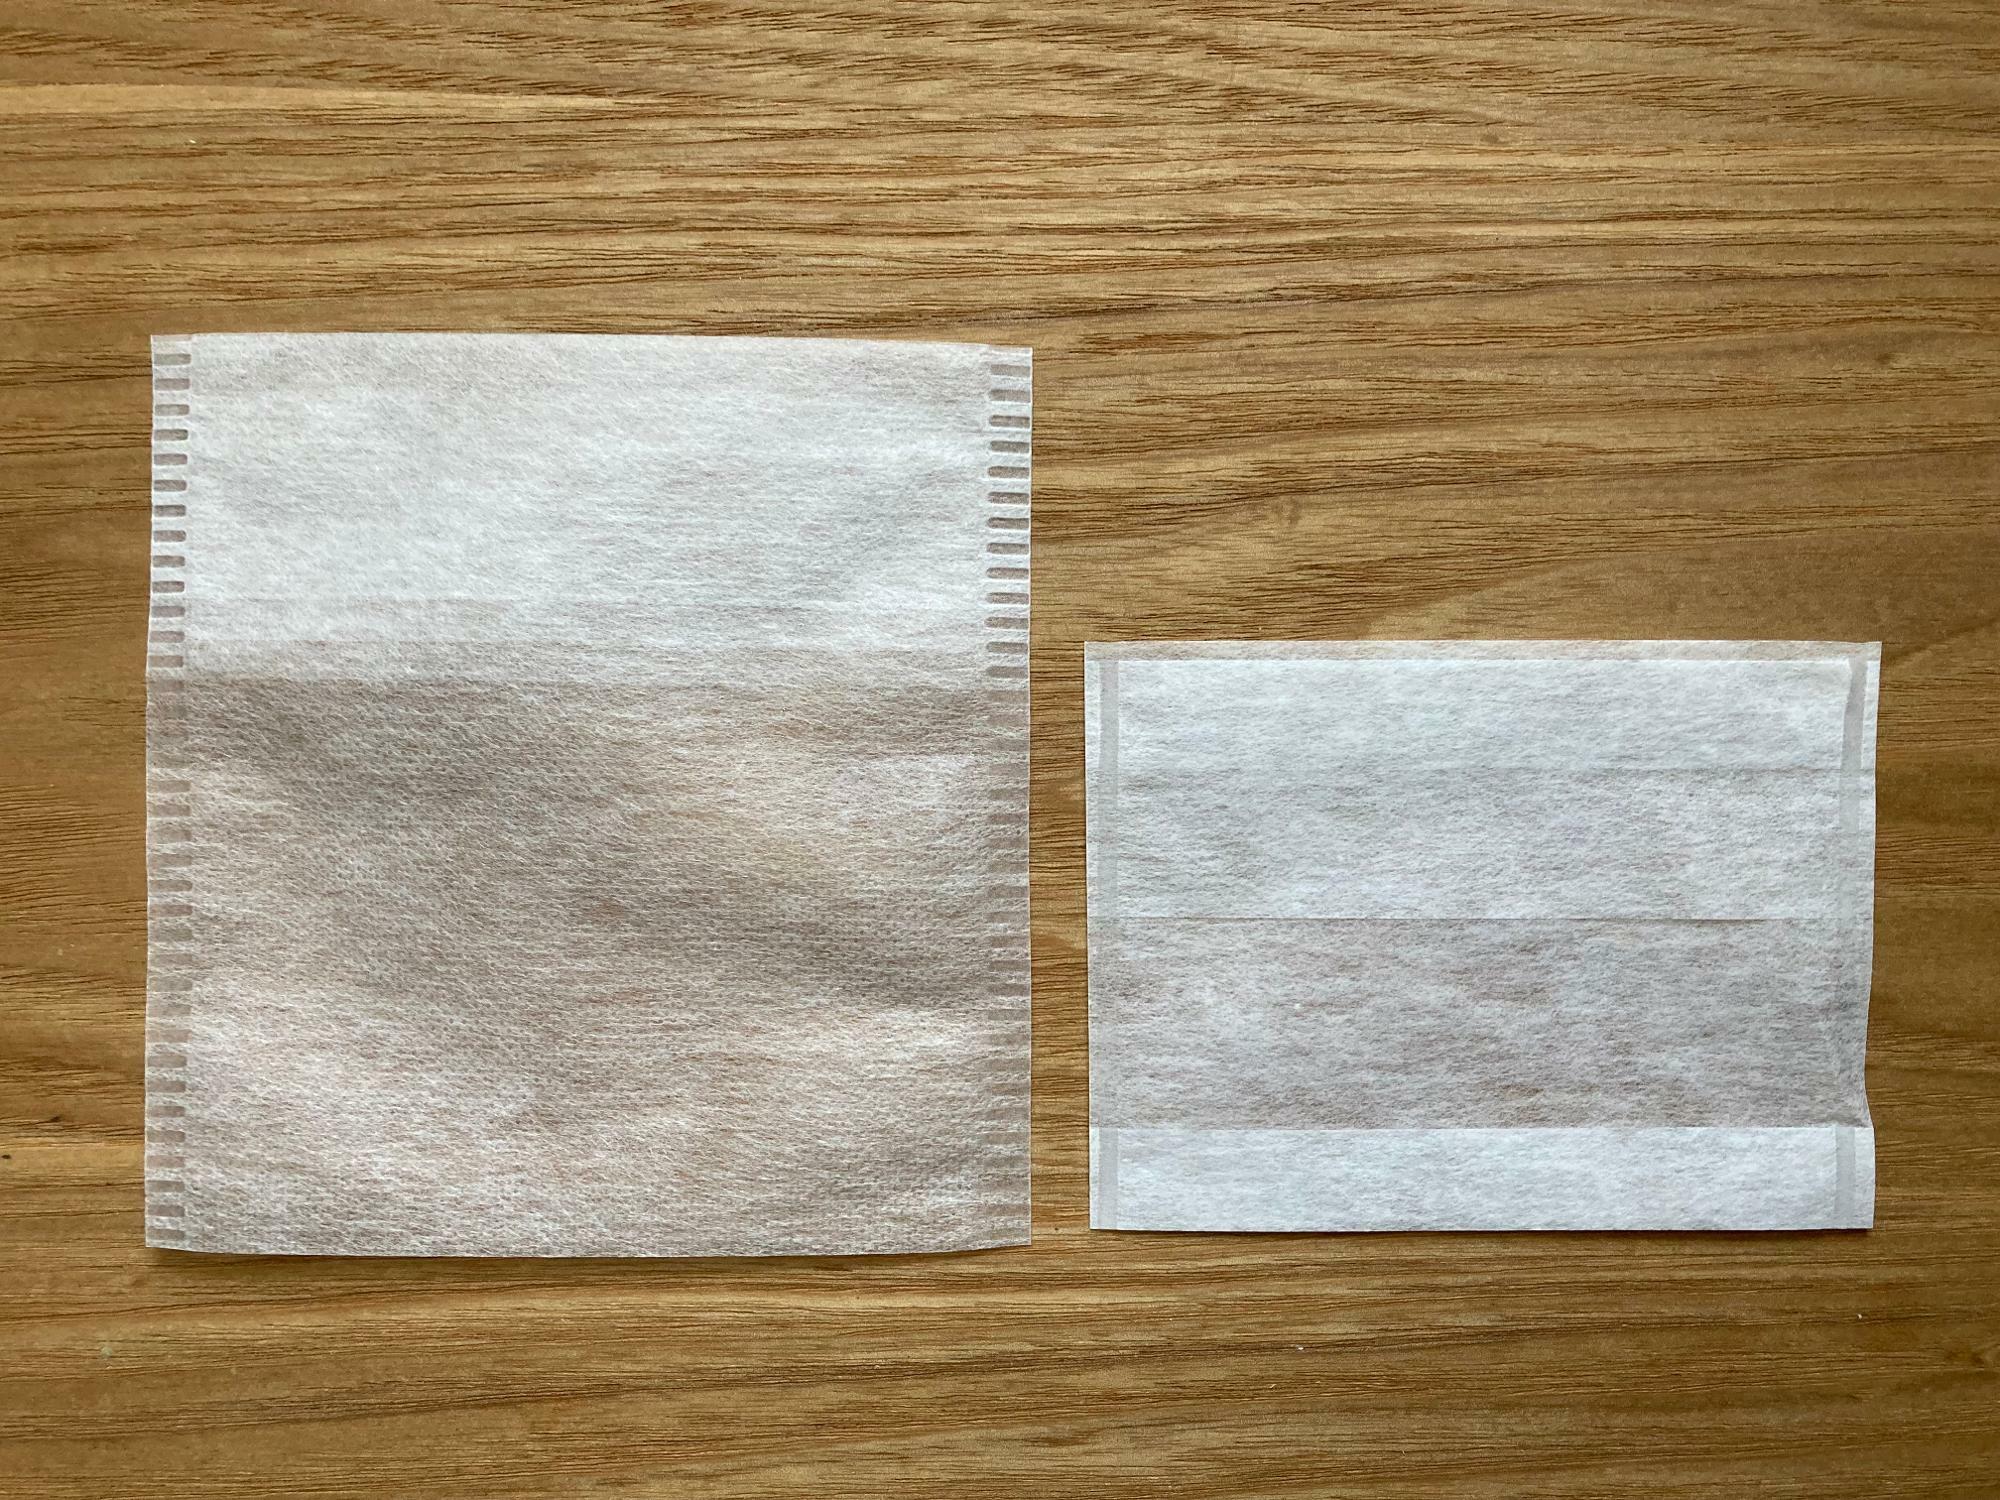 だしパック（左）はお茶パック（右）の2倍ほどの大きさで、口も大きく開きます。どちらも不織布でできています。